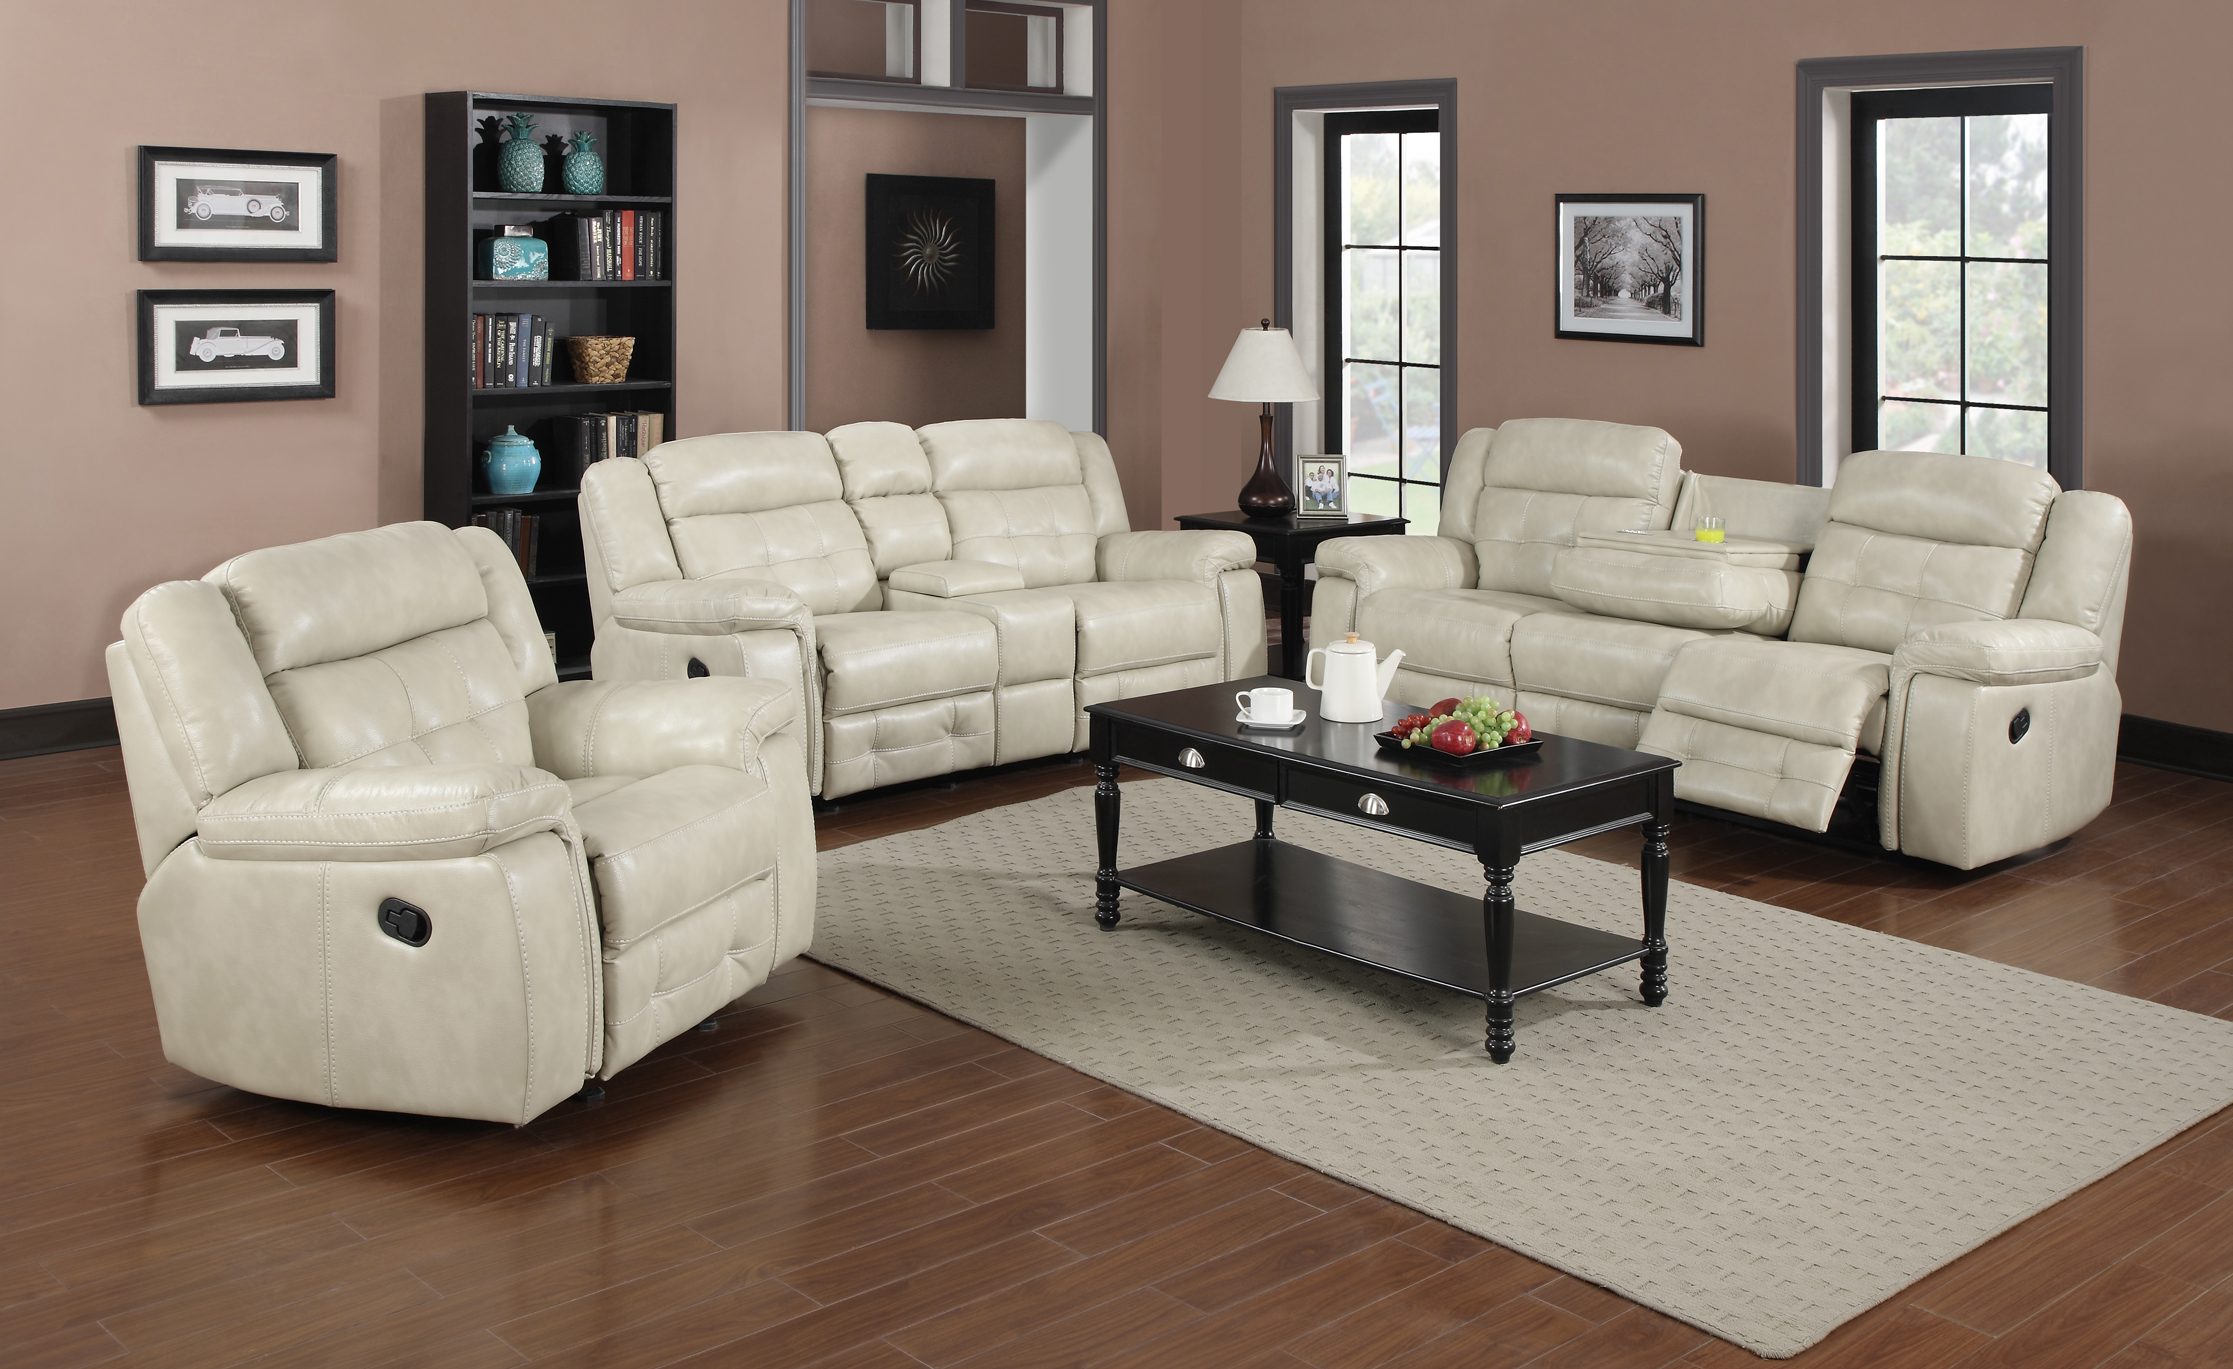 Brampton air Sofa $999.99 - Furniture Trends